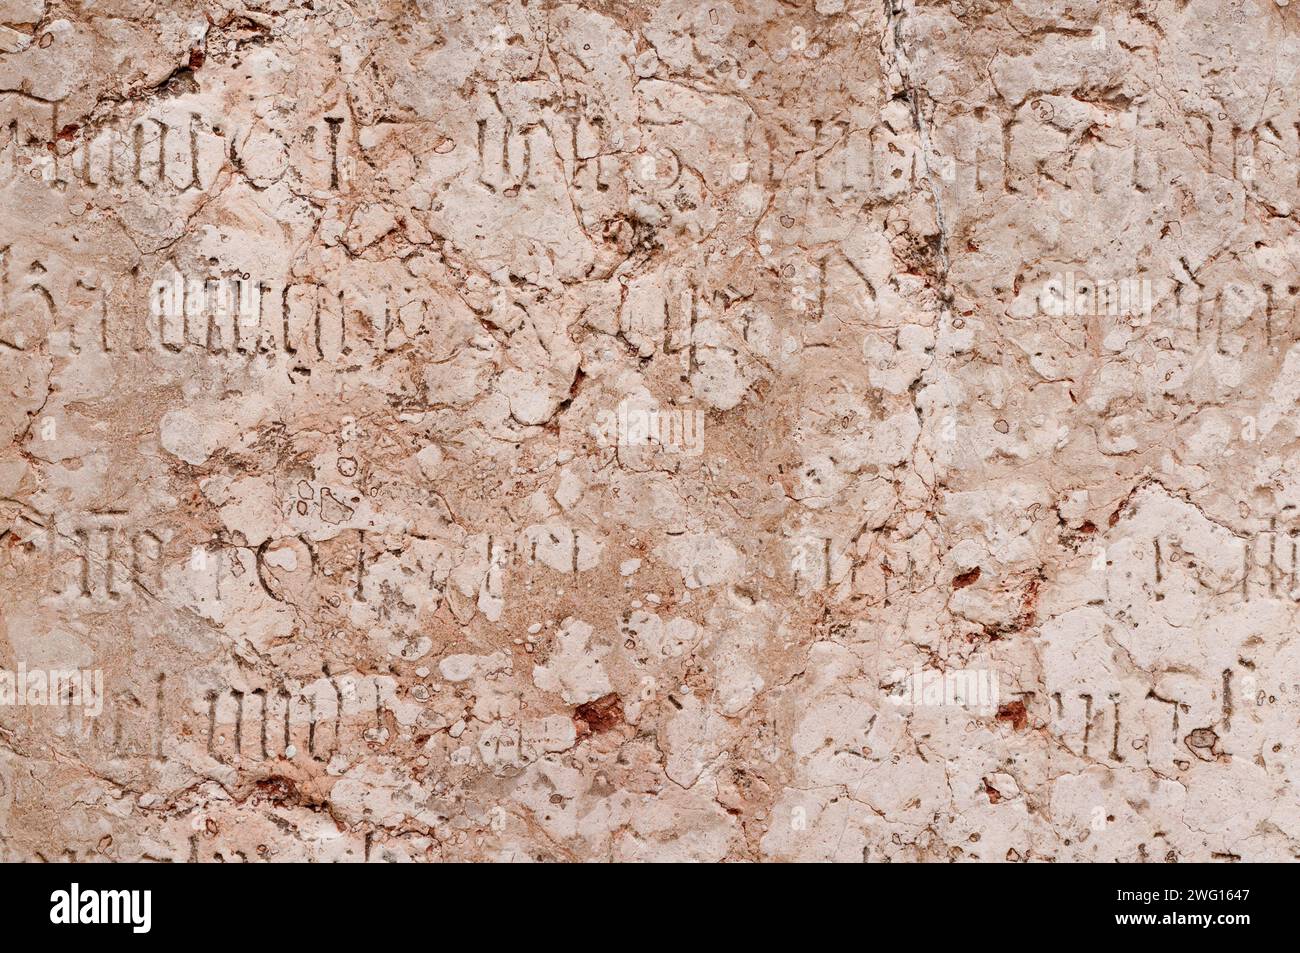 Un ancien mur avec des inscriptions historiques gravées dedans Banque D'Images